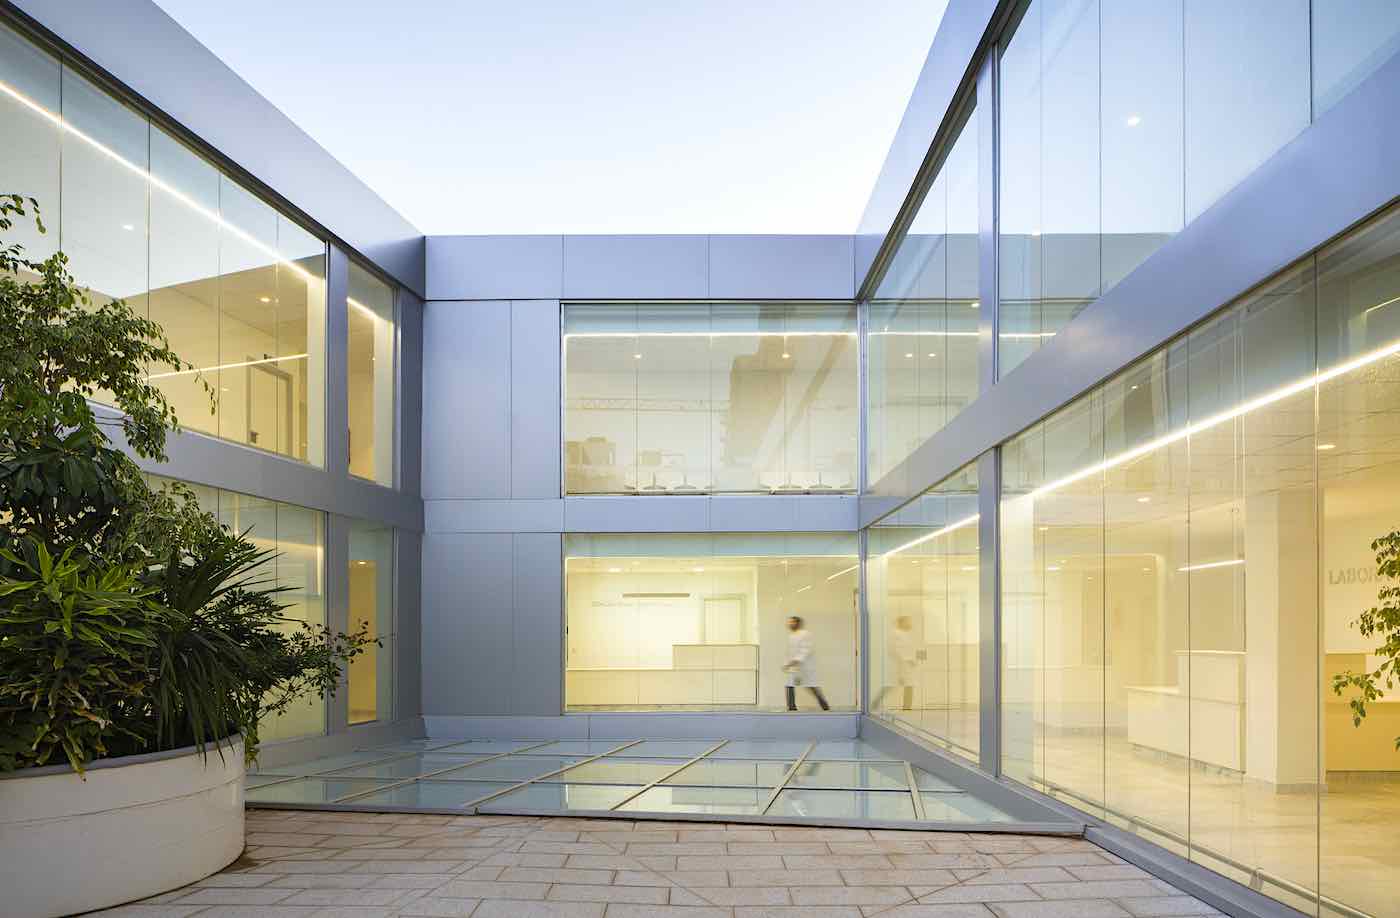 El estudio valenciano Lecoc gana el premio internacional IF Design Award de arquitectura por crear el hospital oncológico de Orán